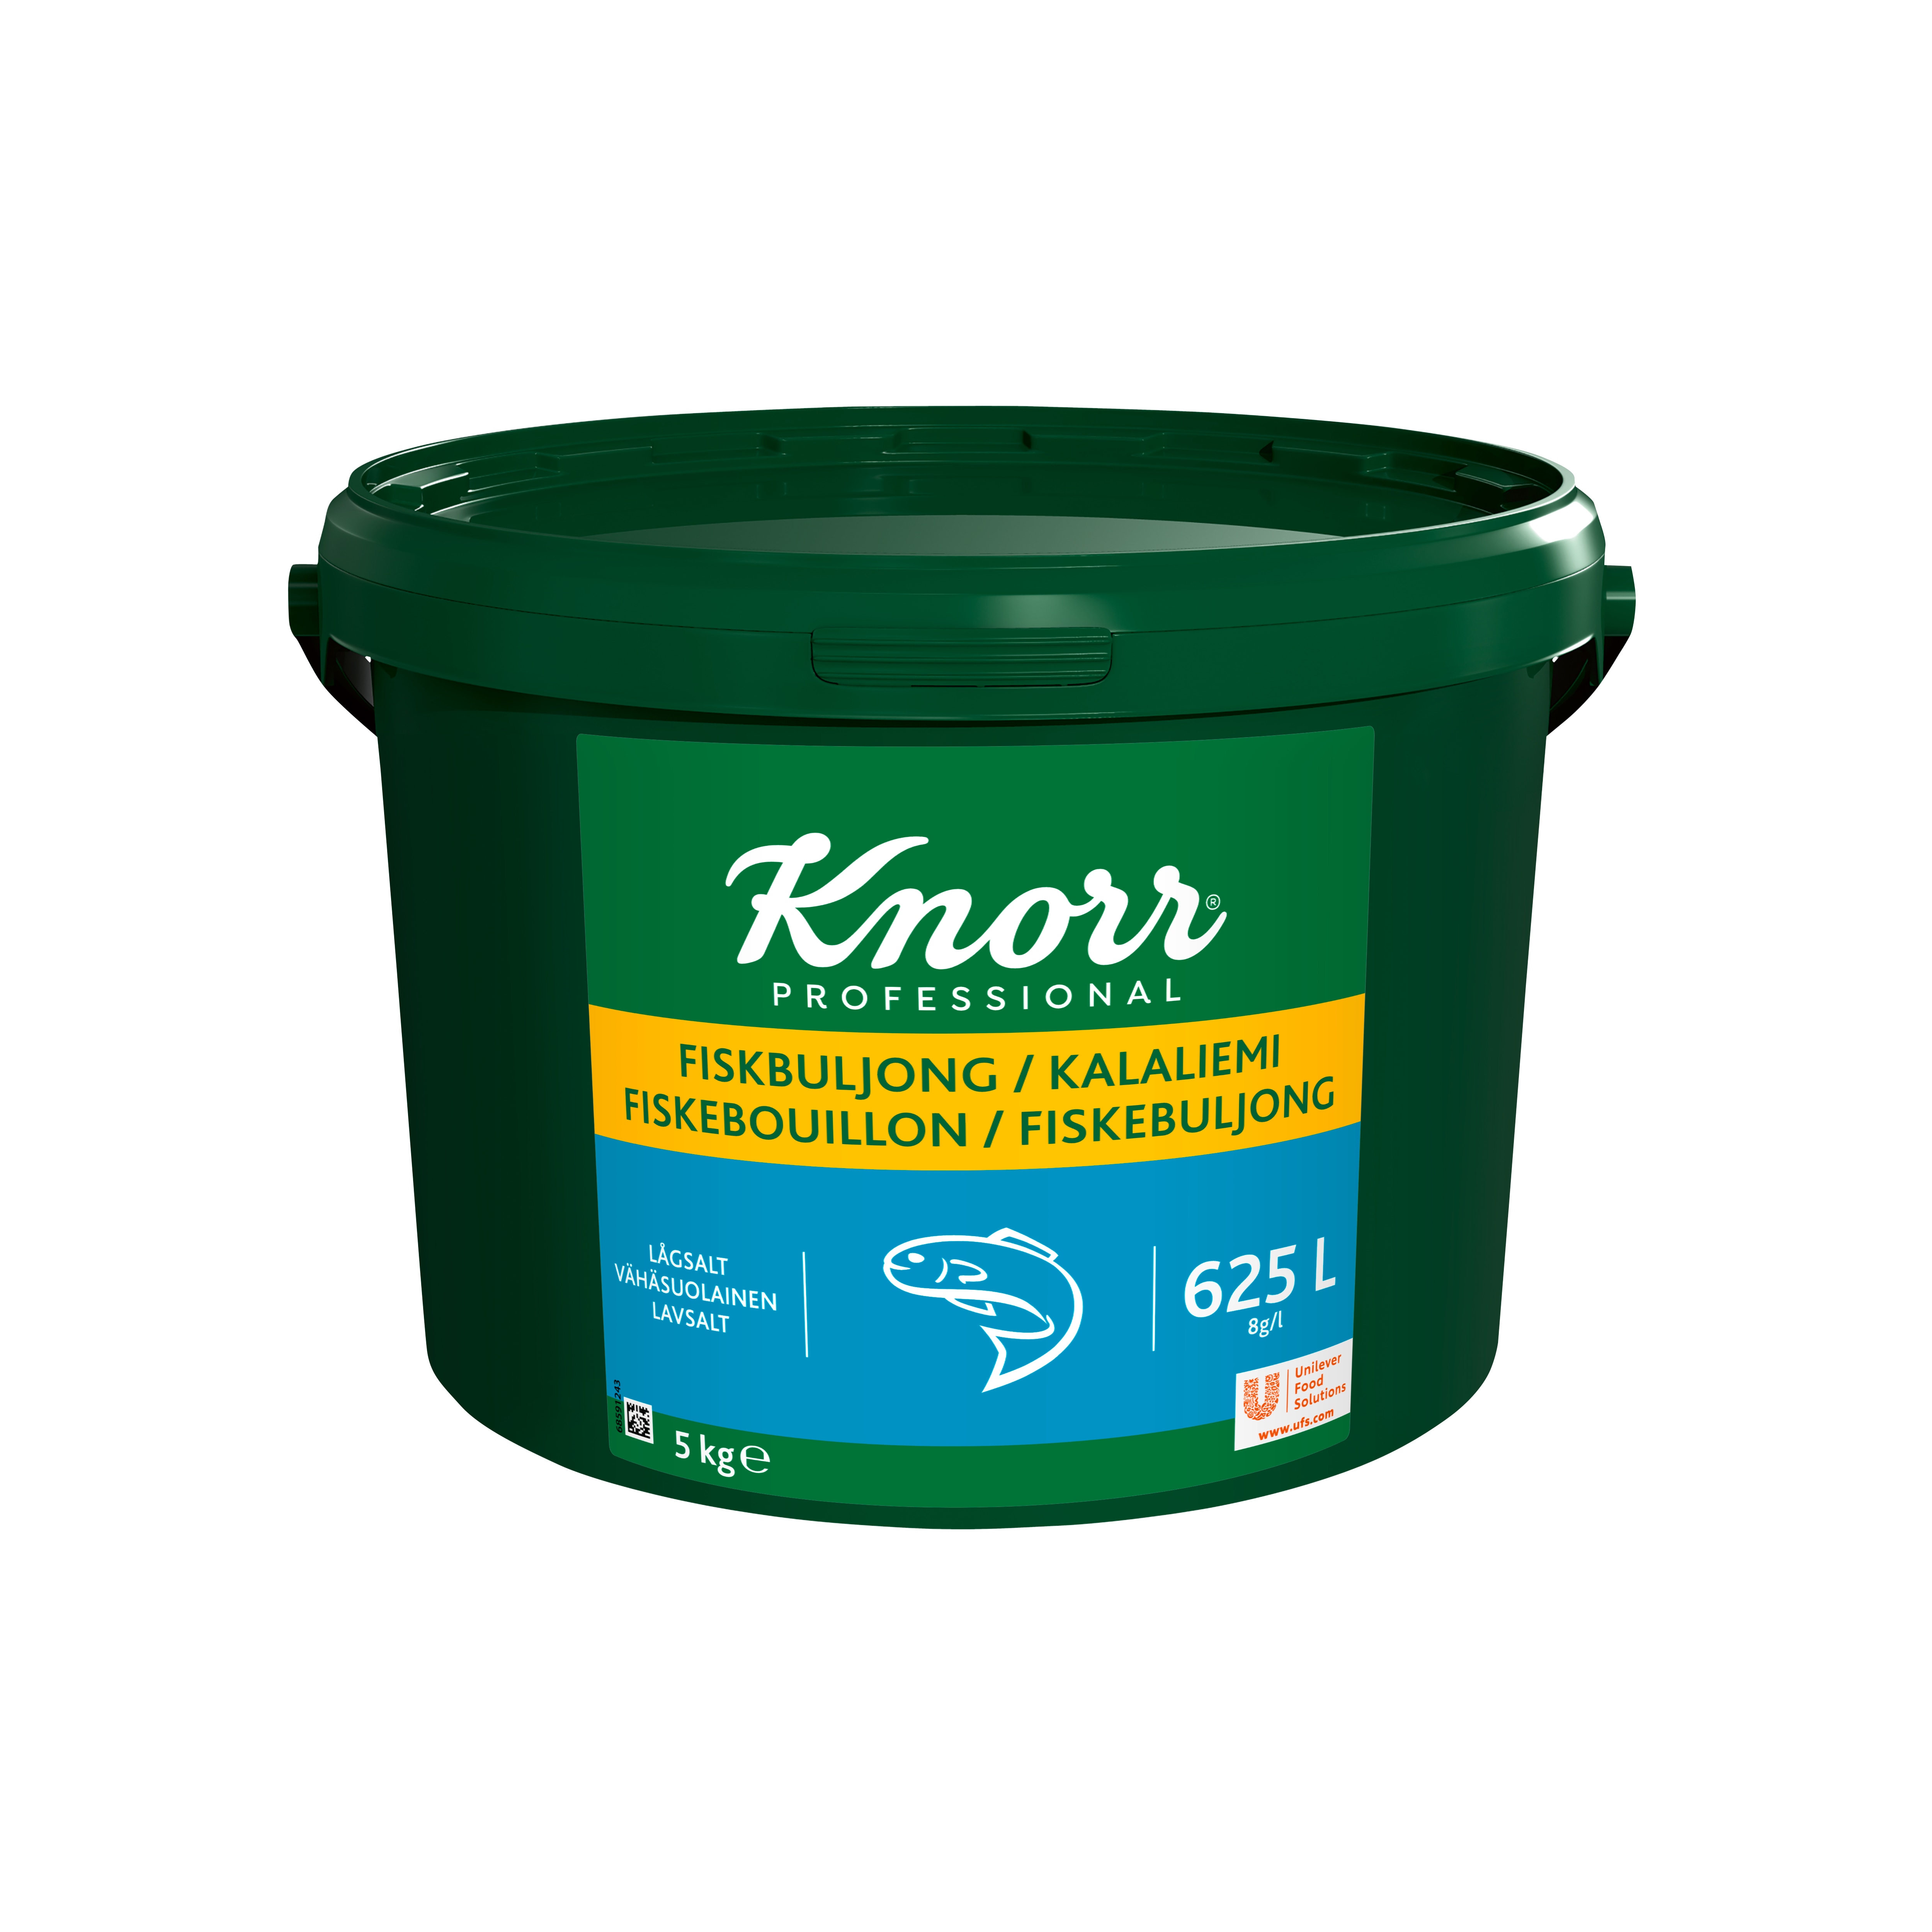 Knorr Fiskbuljong lågsalt 1x5kg